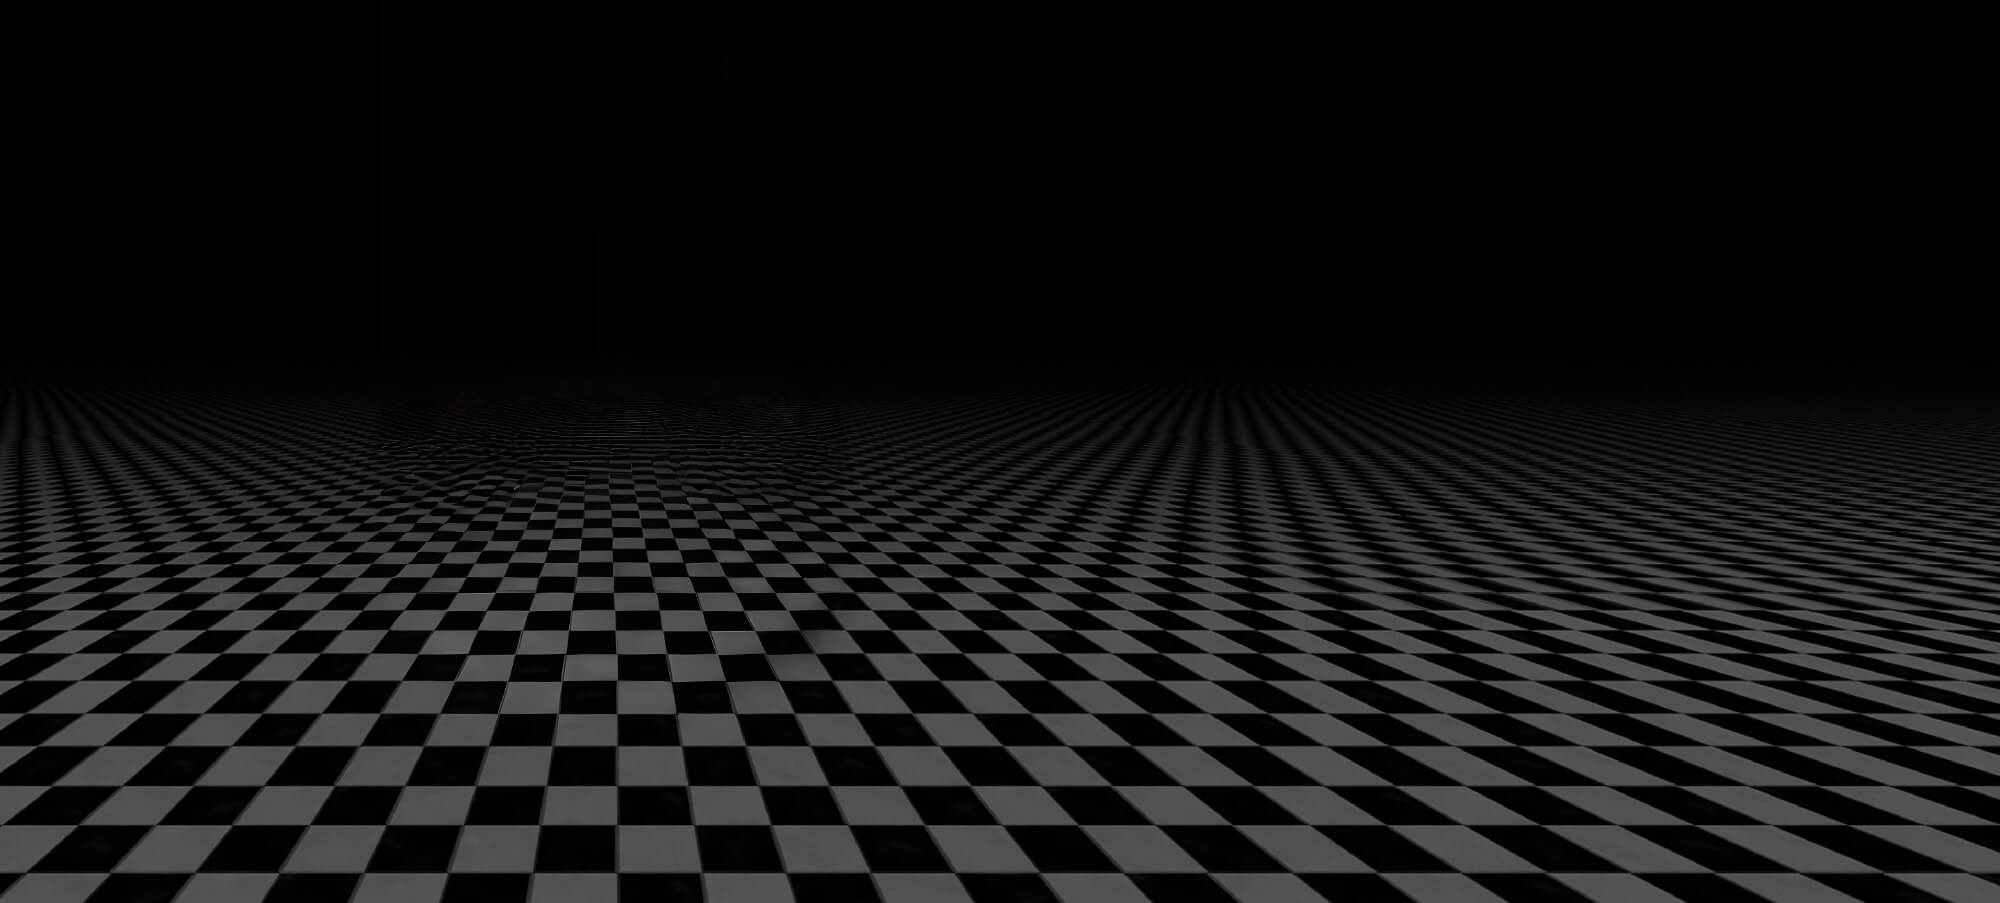 Checkered floor pattern